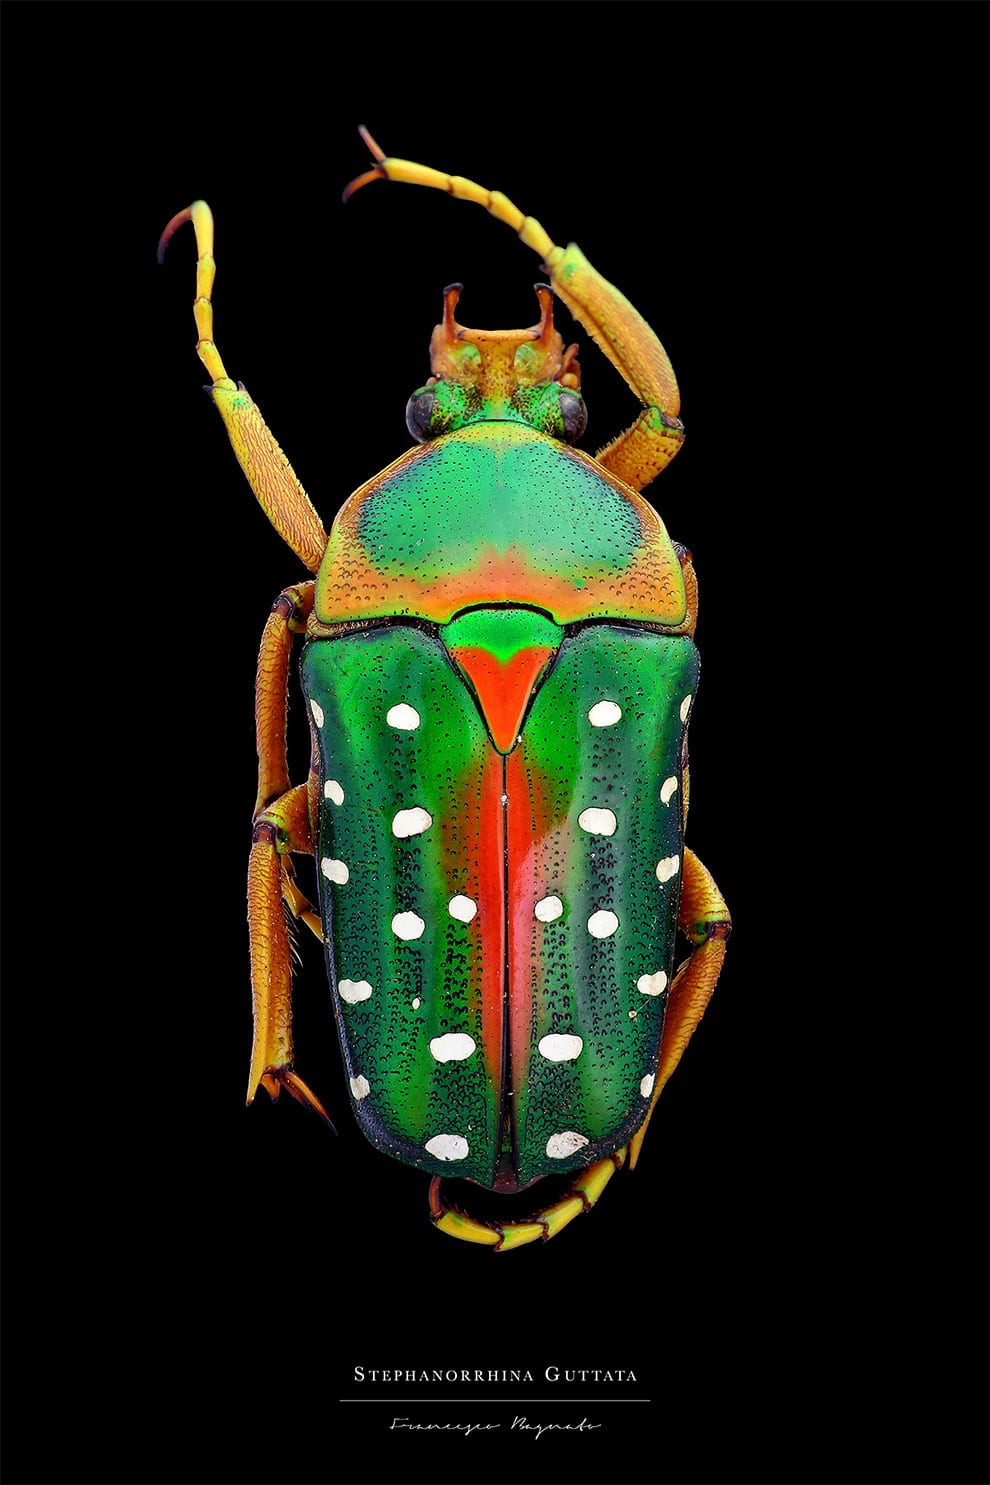 Los escarabajos más bellos del mundo